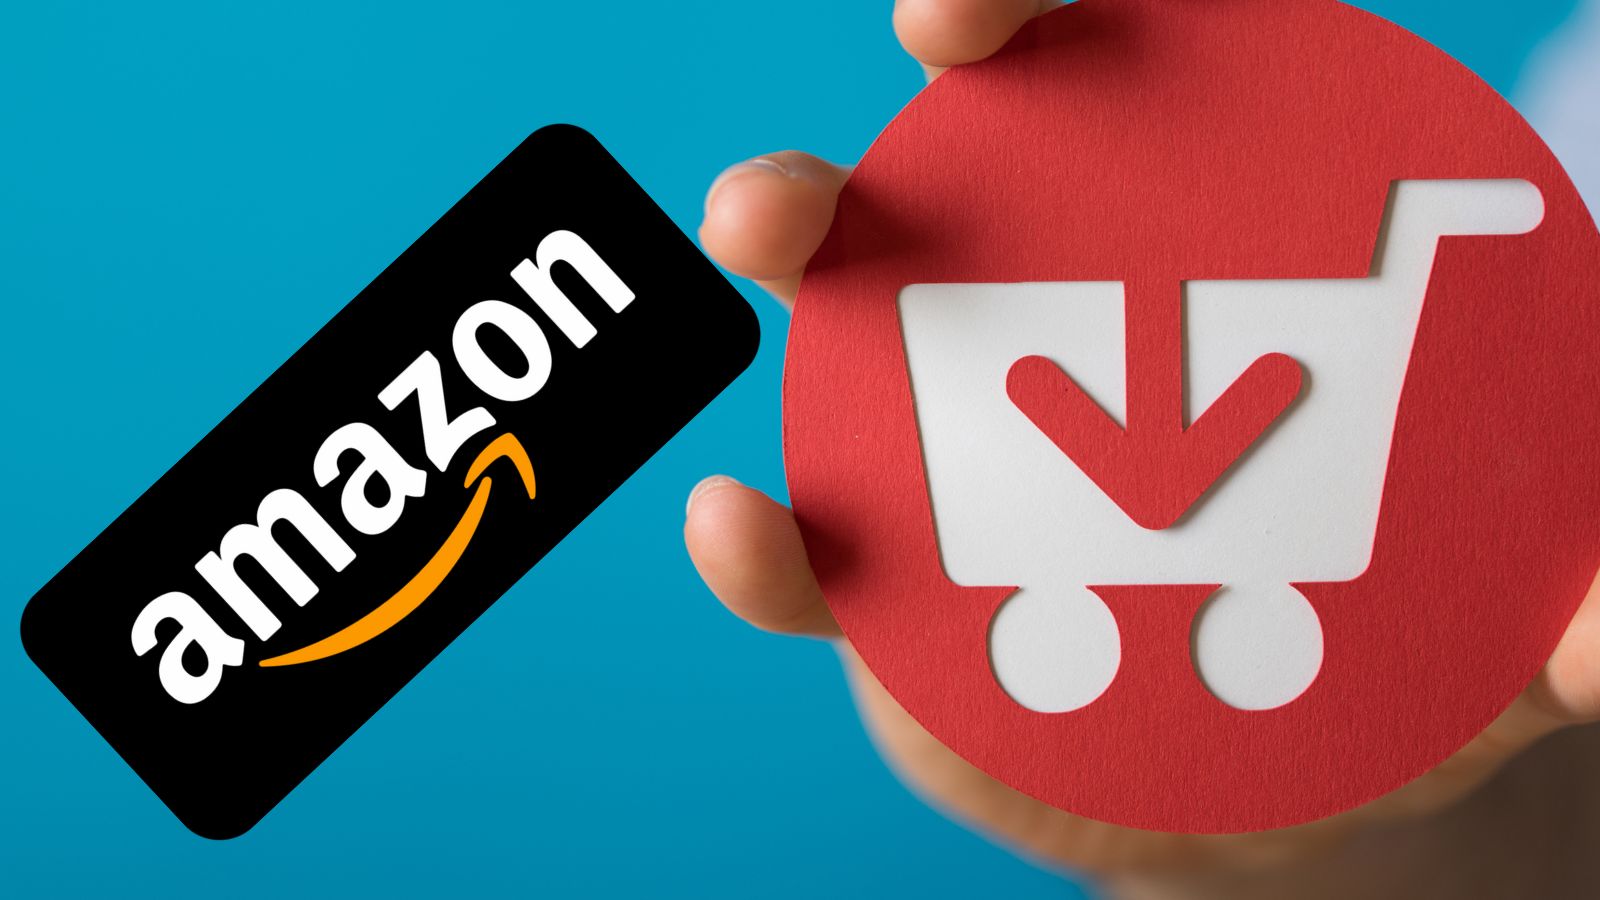 Amazon è FOLLE con offerte al 90%: ecco l'elenco segreto